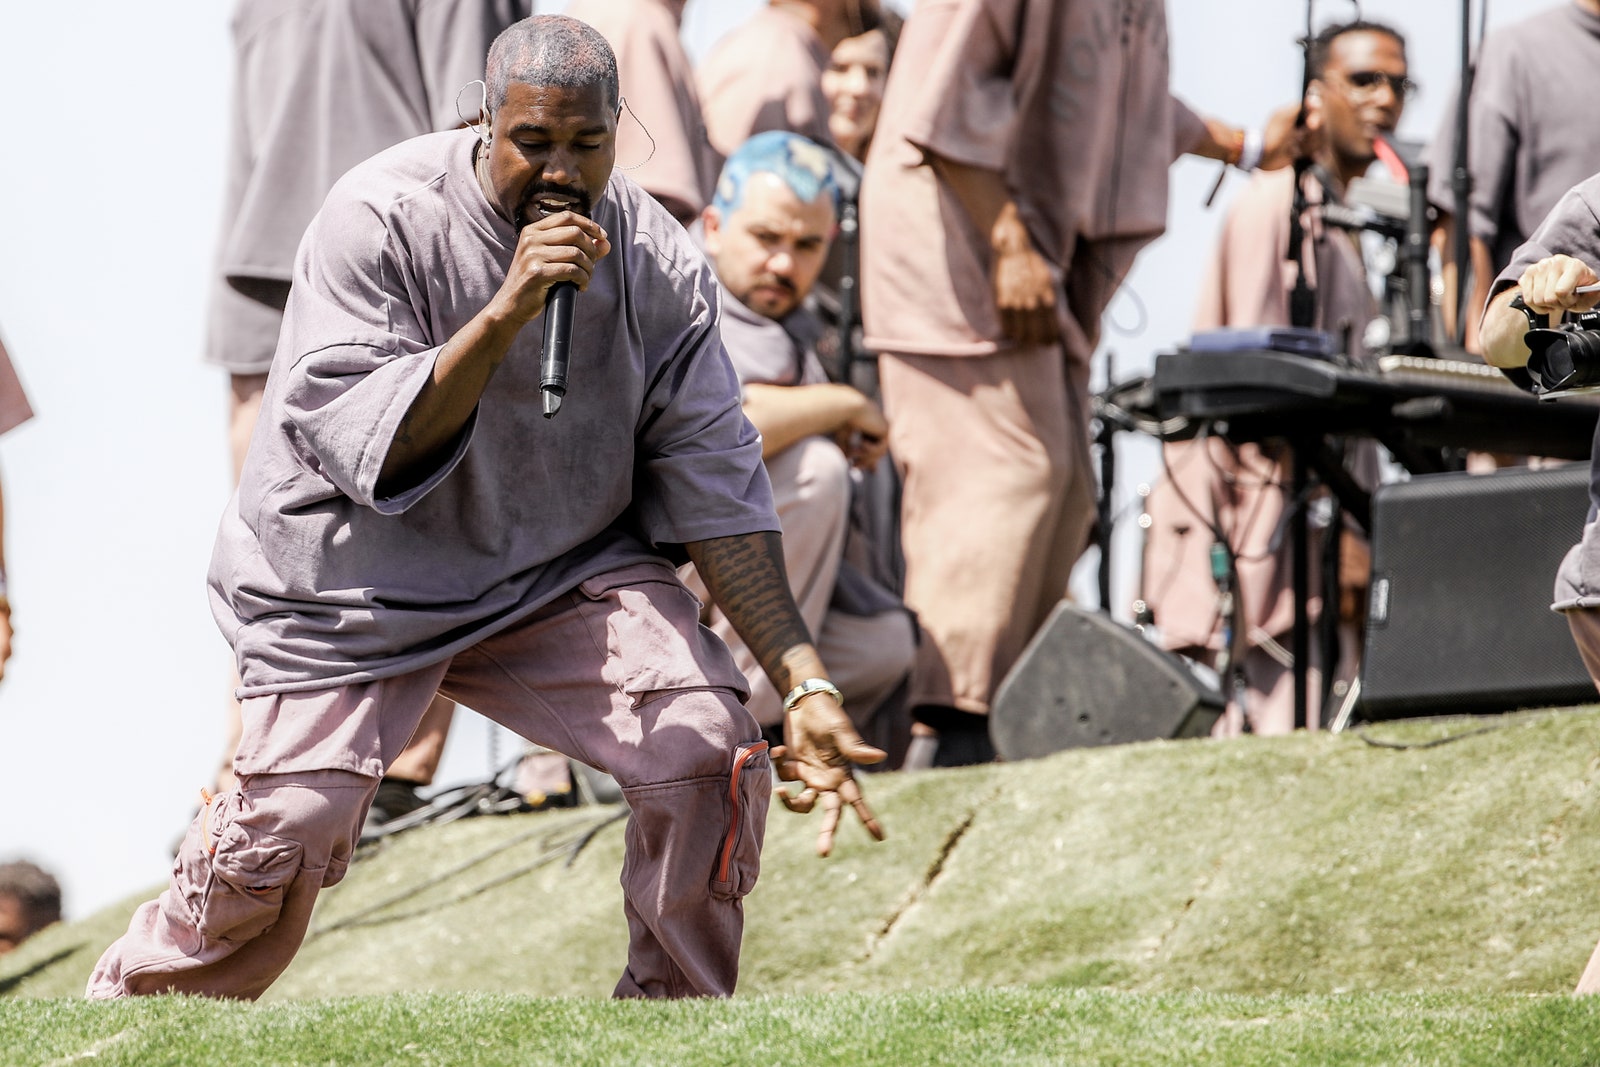 Kanye West провел пасхальную службу на фестивале Coachella